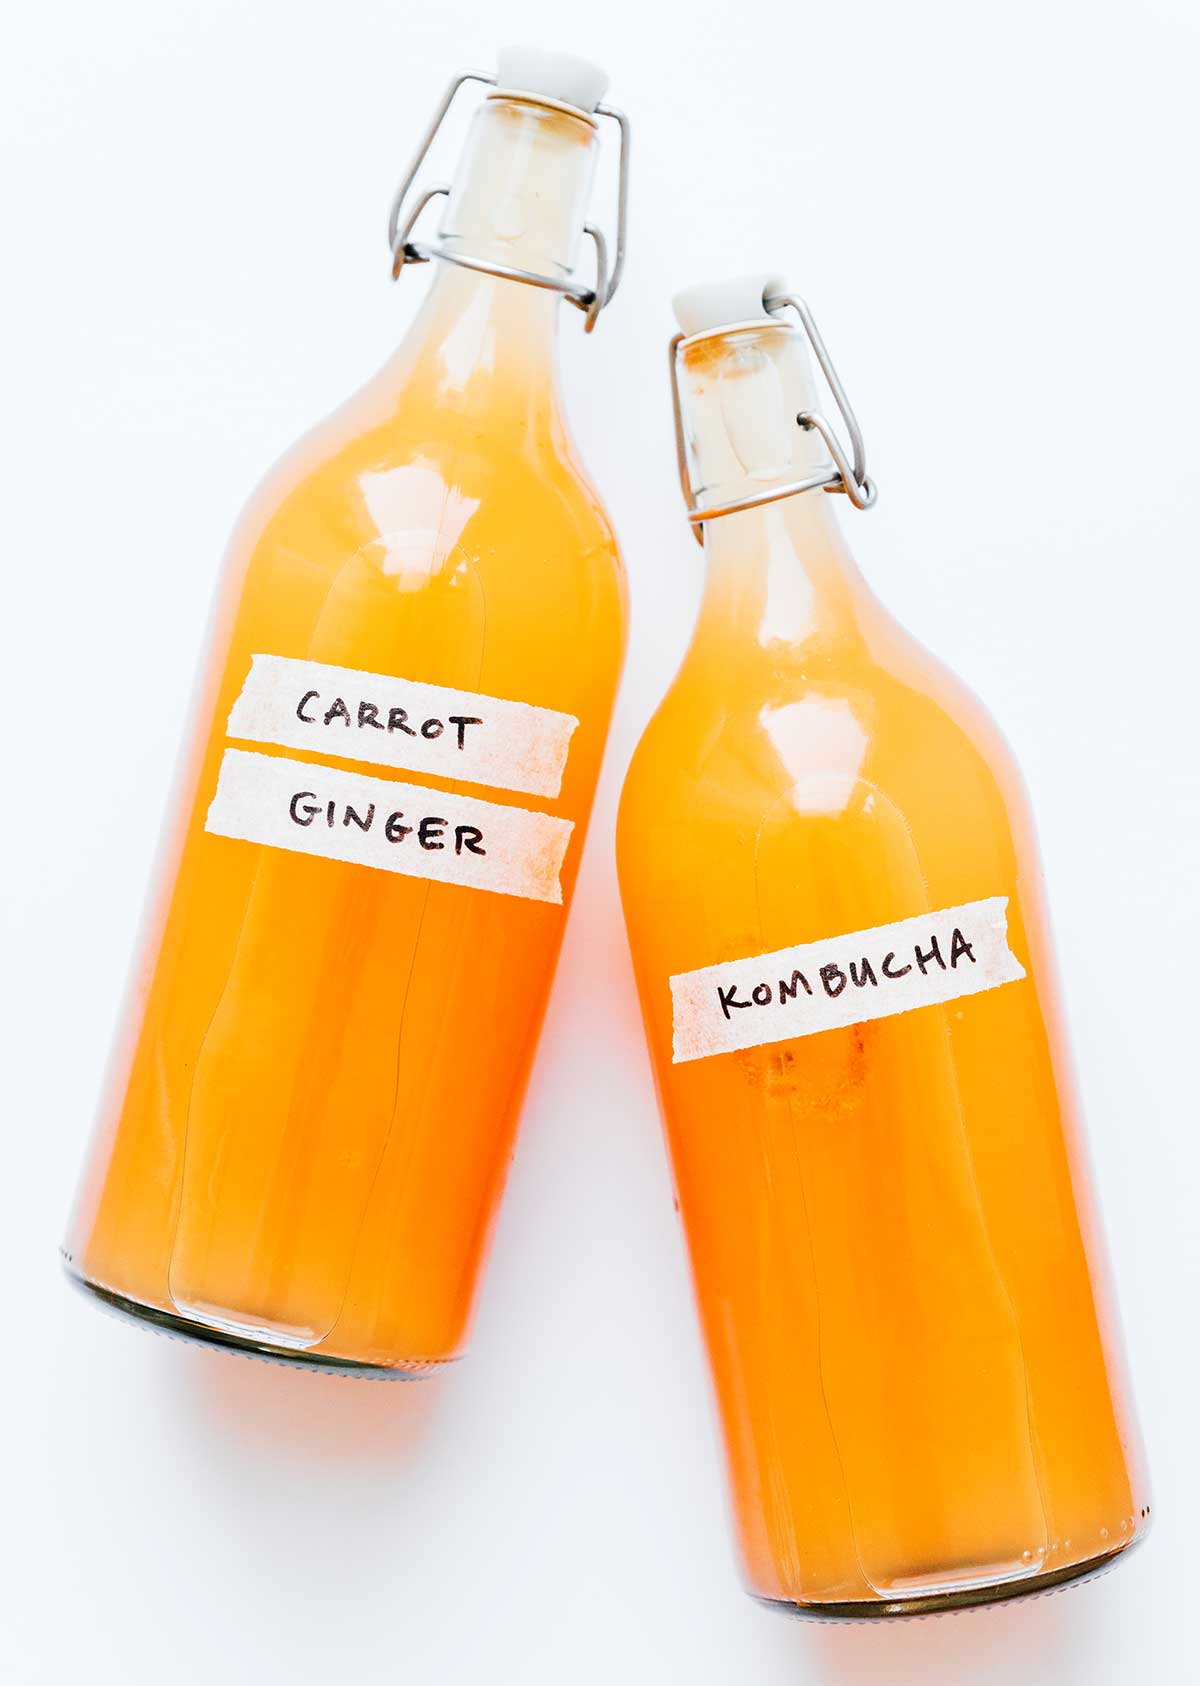 Carrot ginger kombucha in fermentation bottles on an orange background